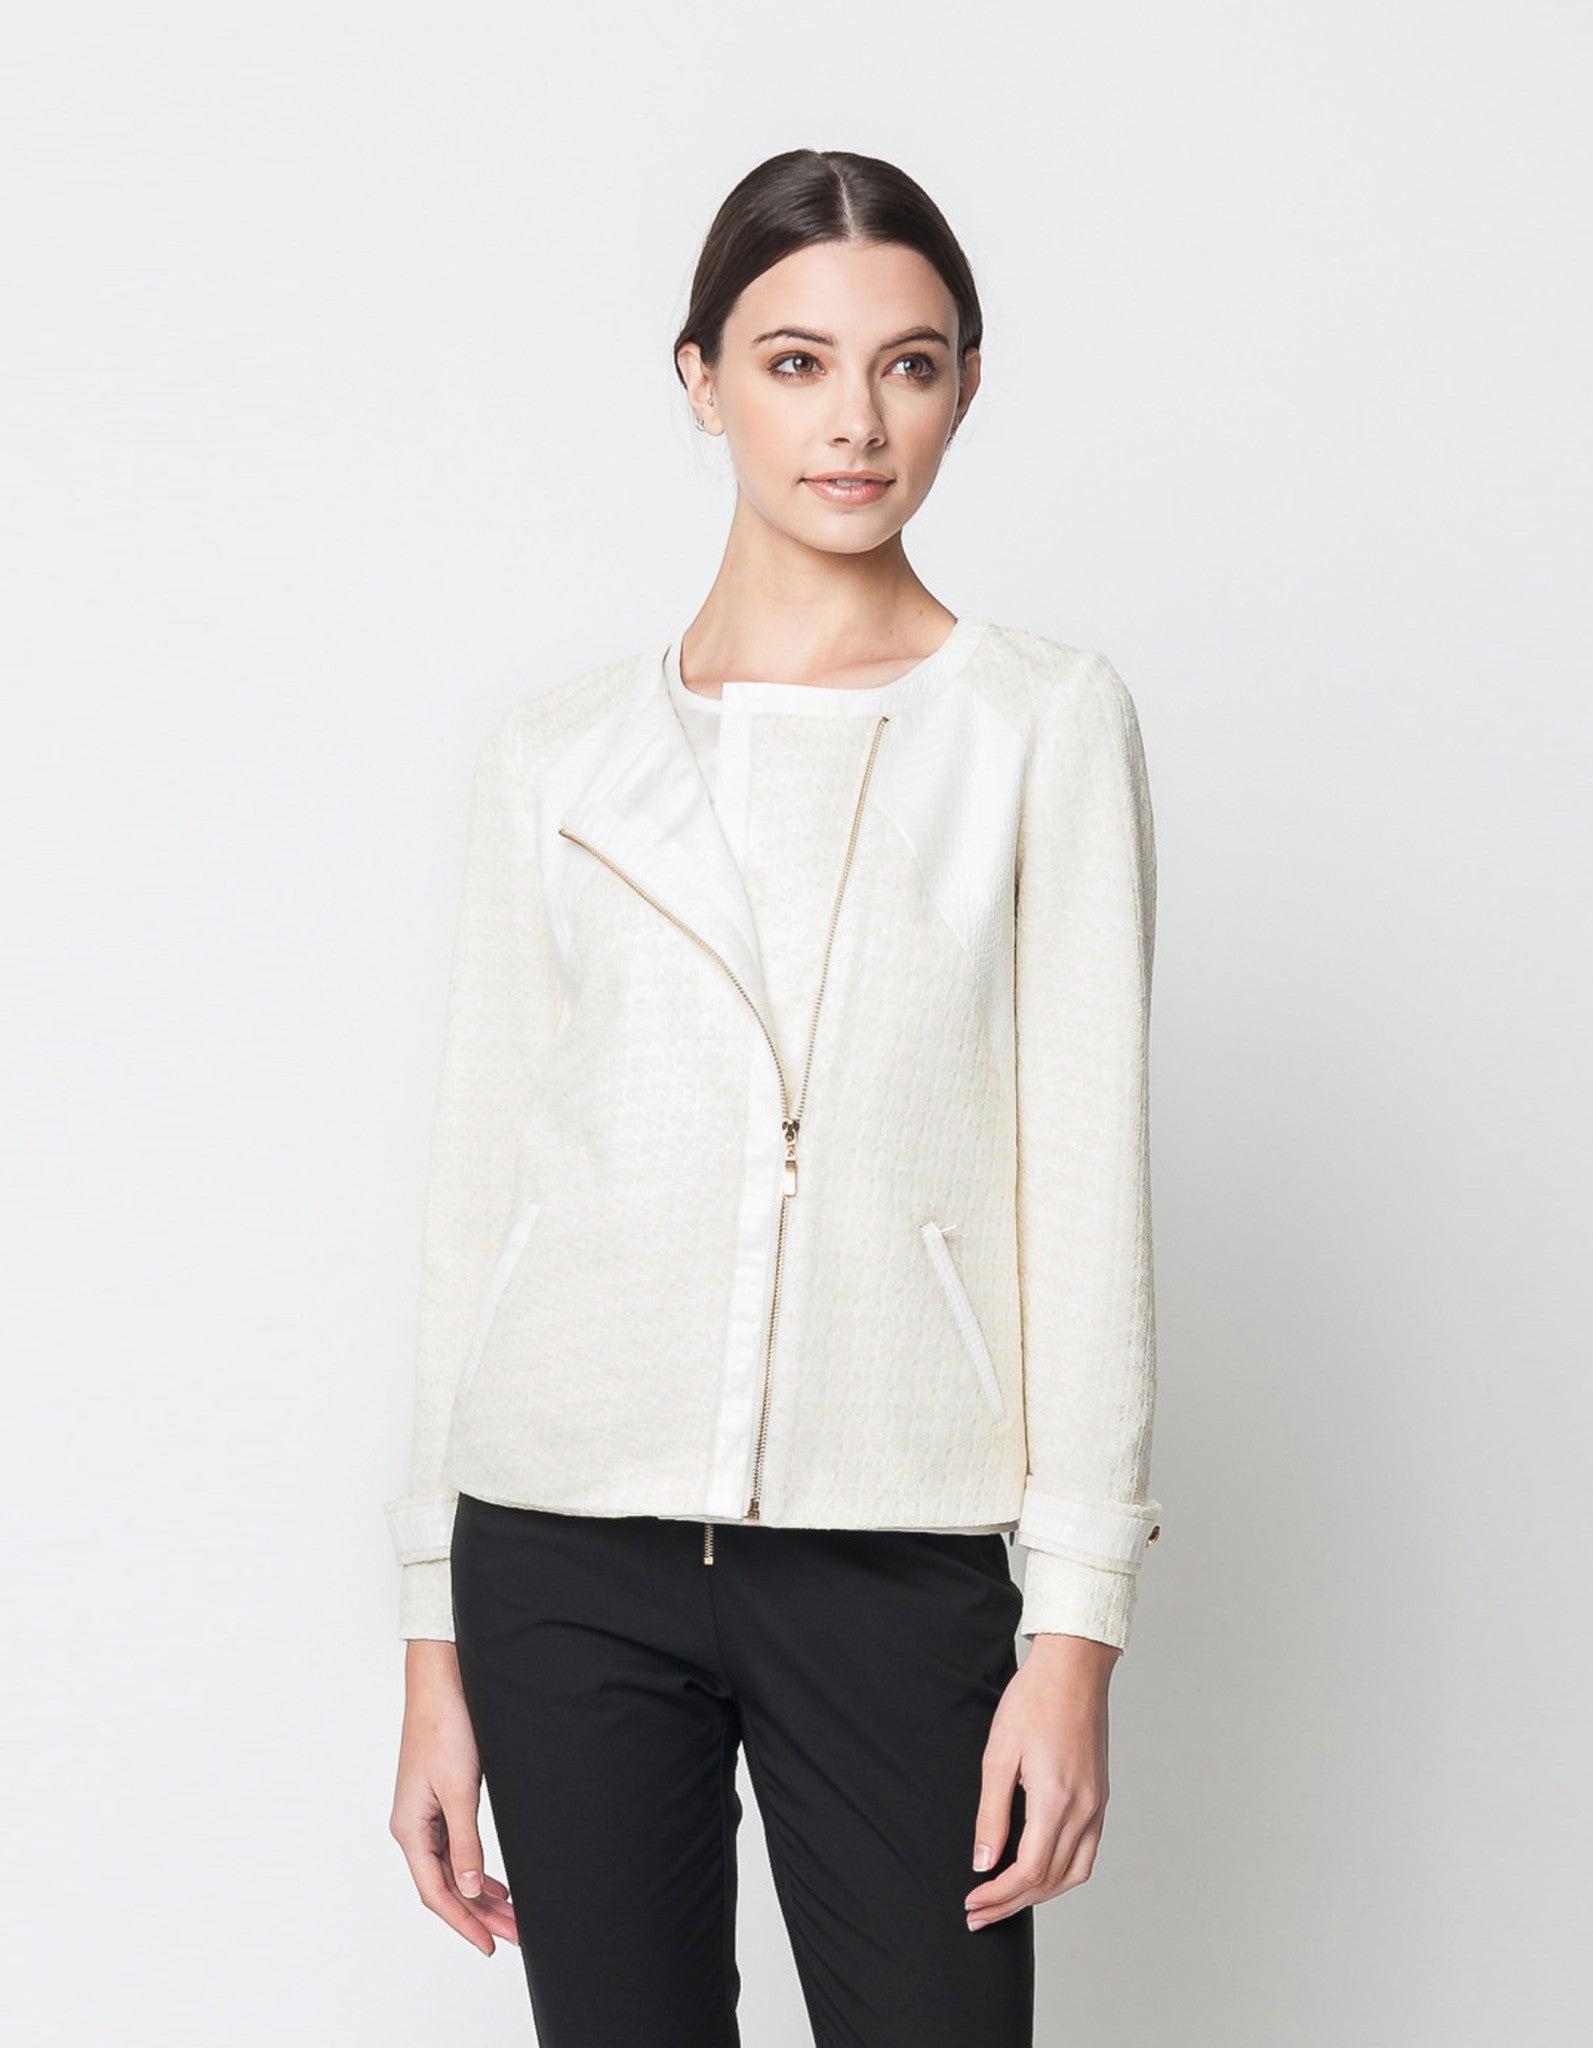 Texture White Gold Jacket – EDITE MODE